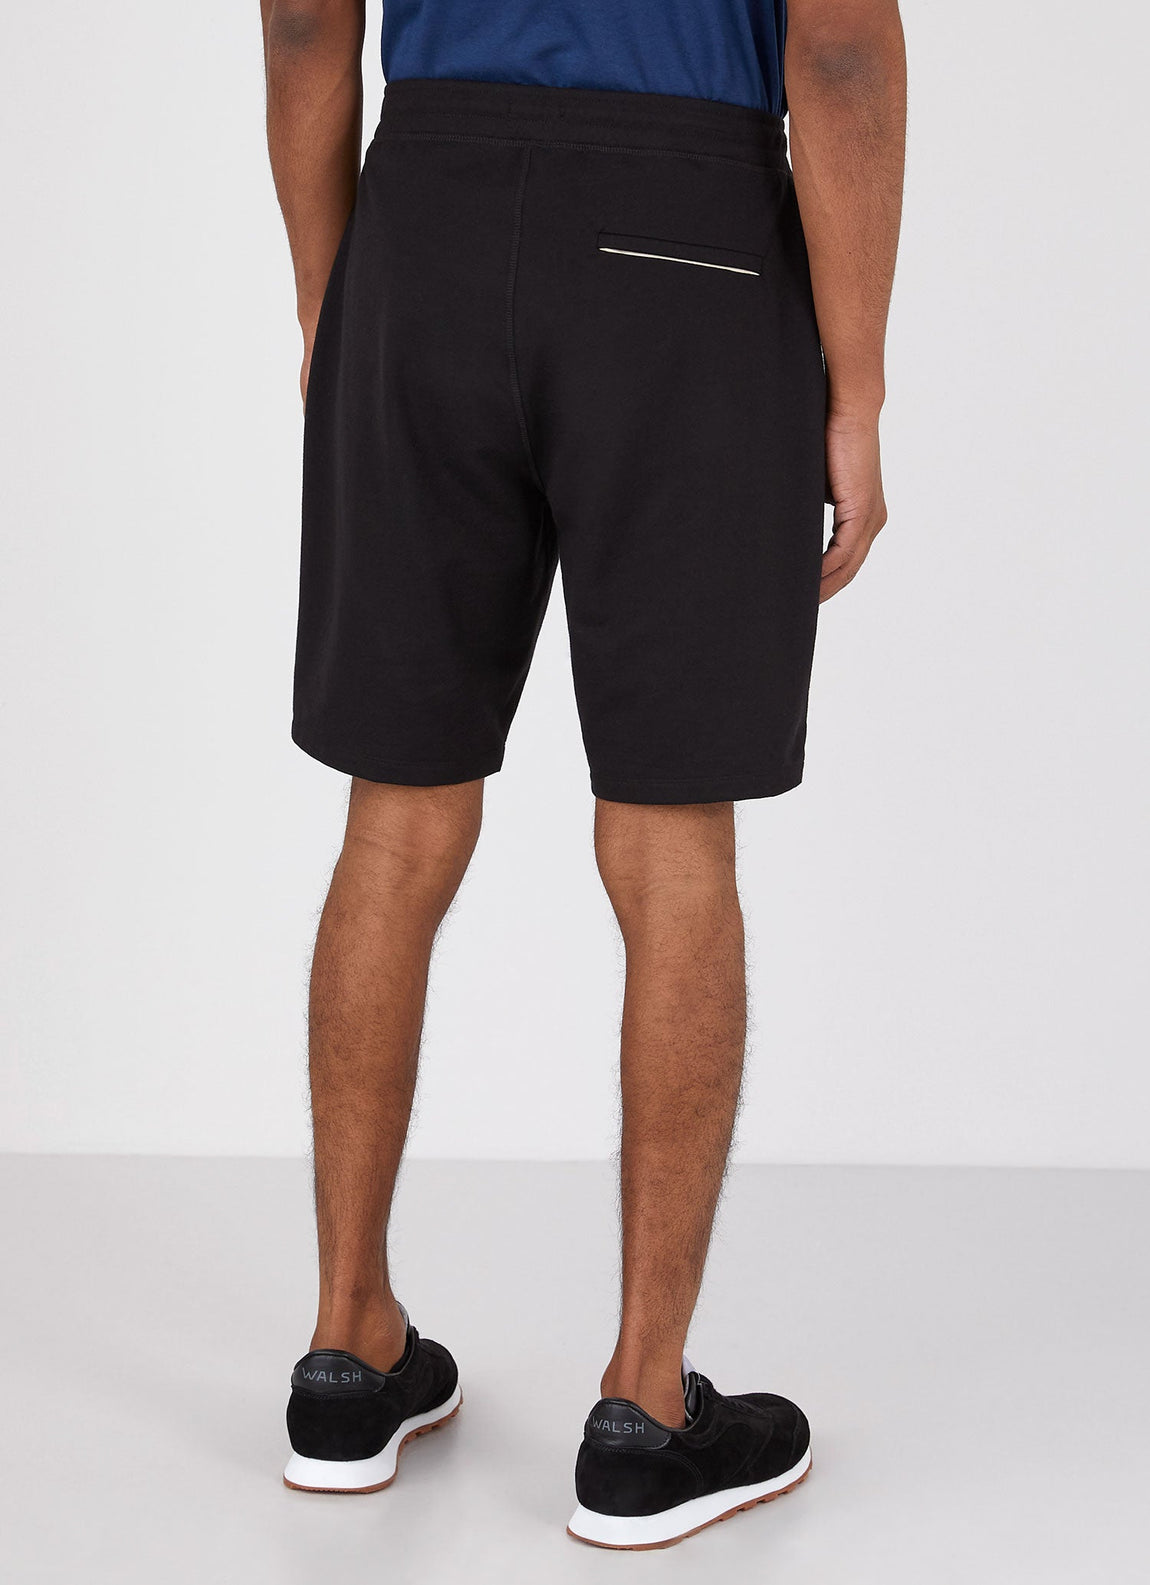 Men's DriRelease Active Shorts in Black